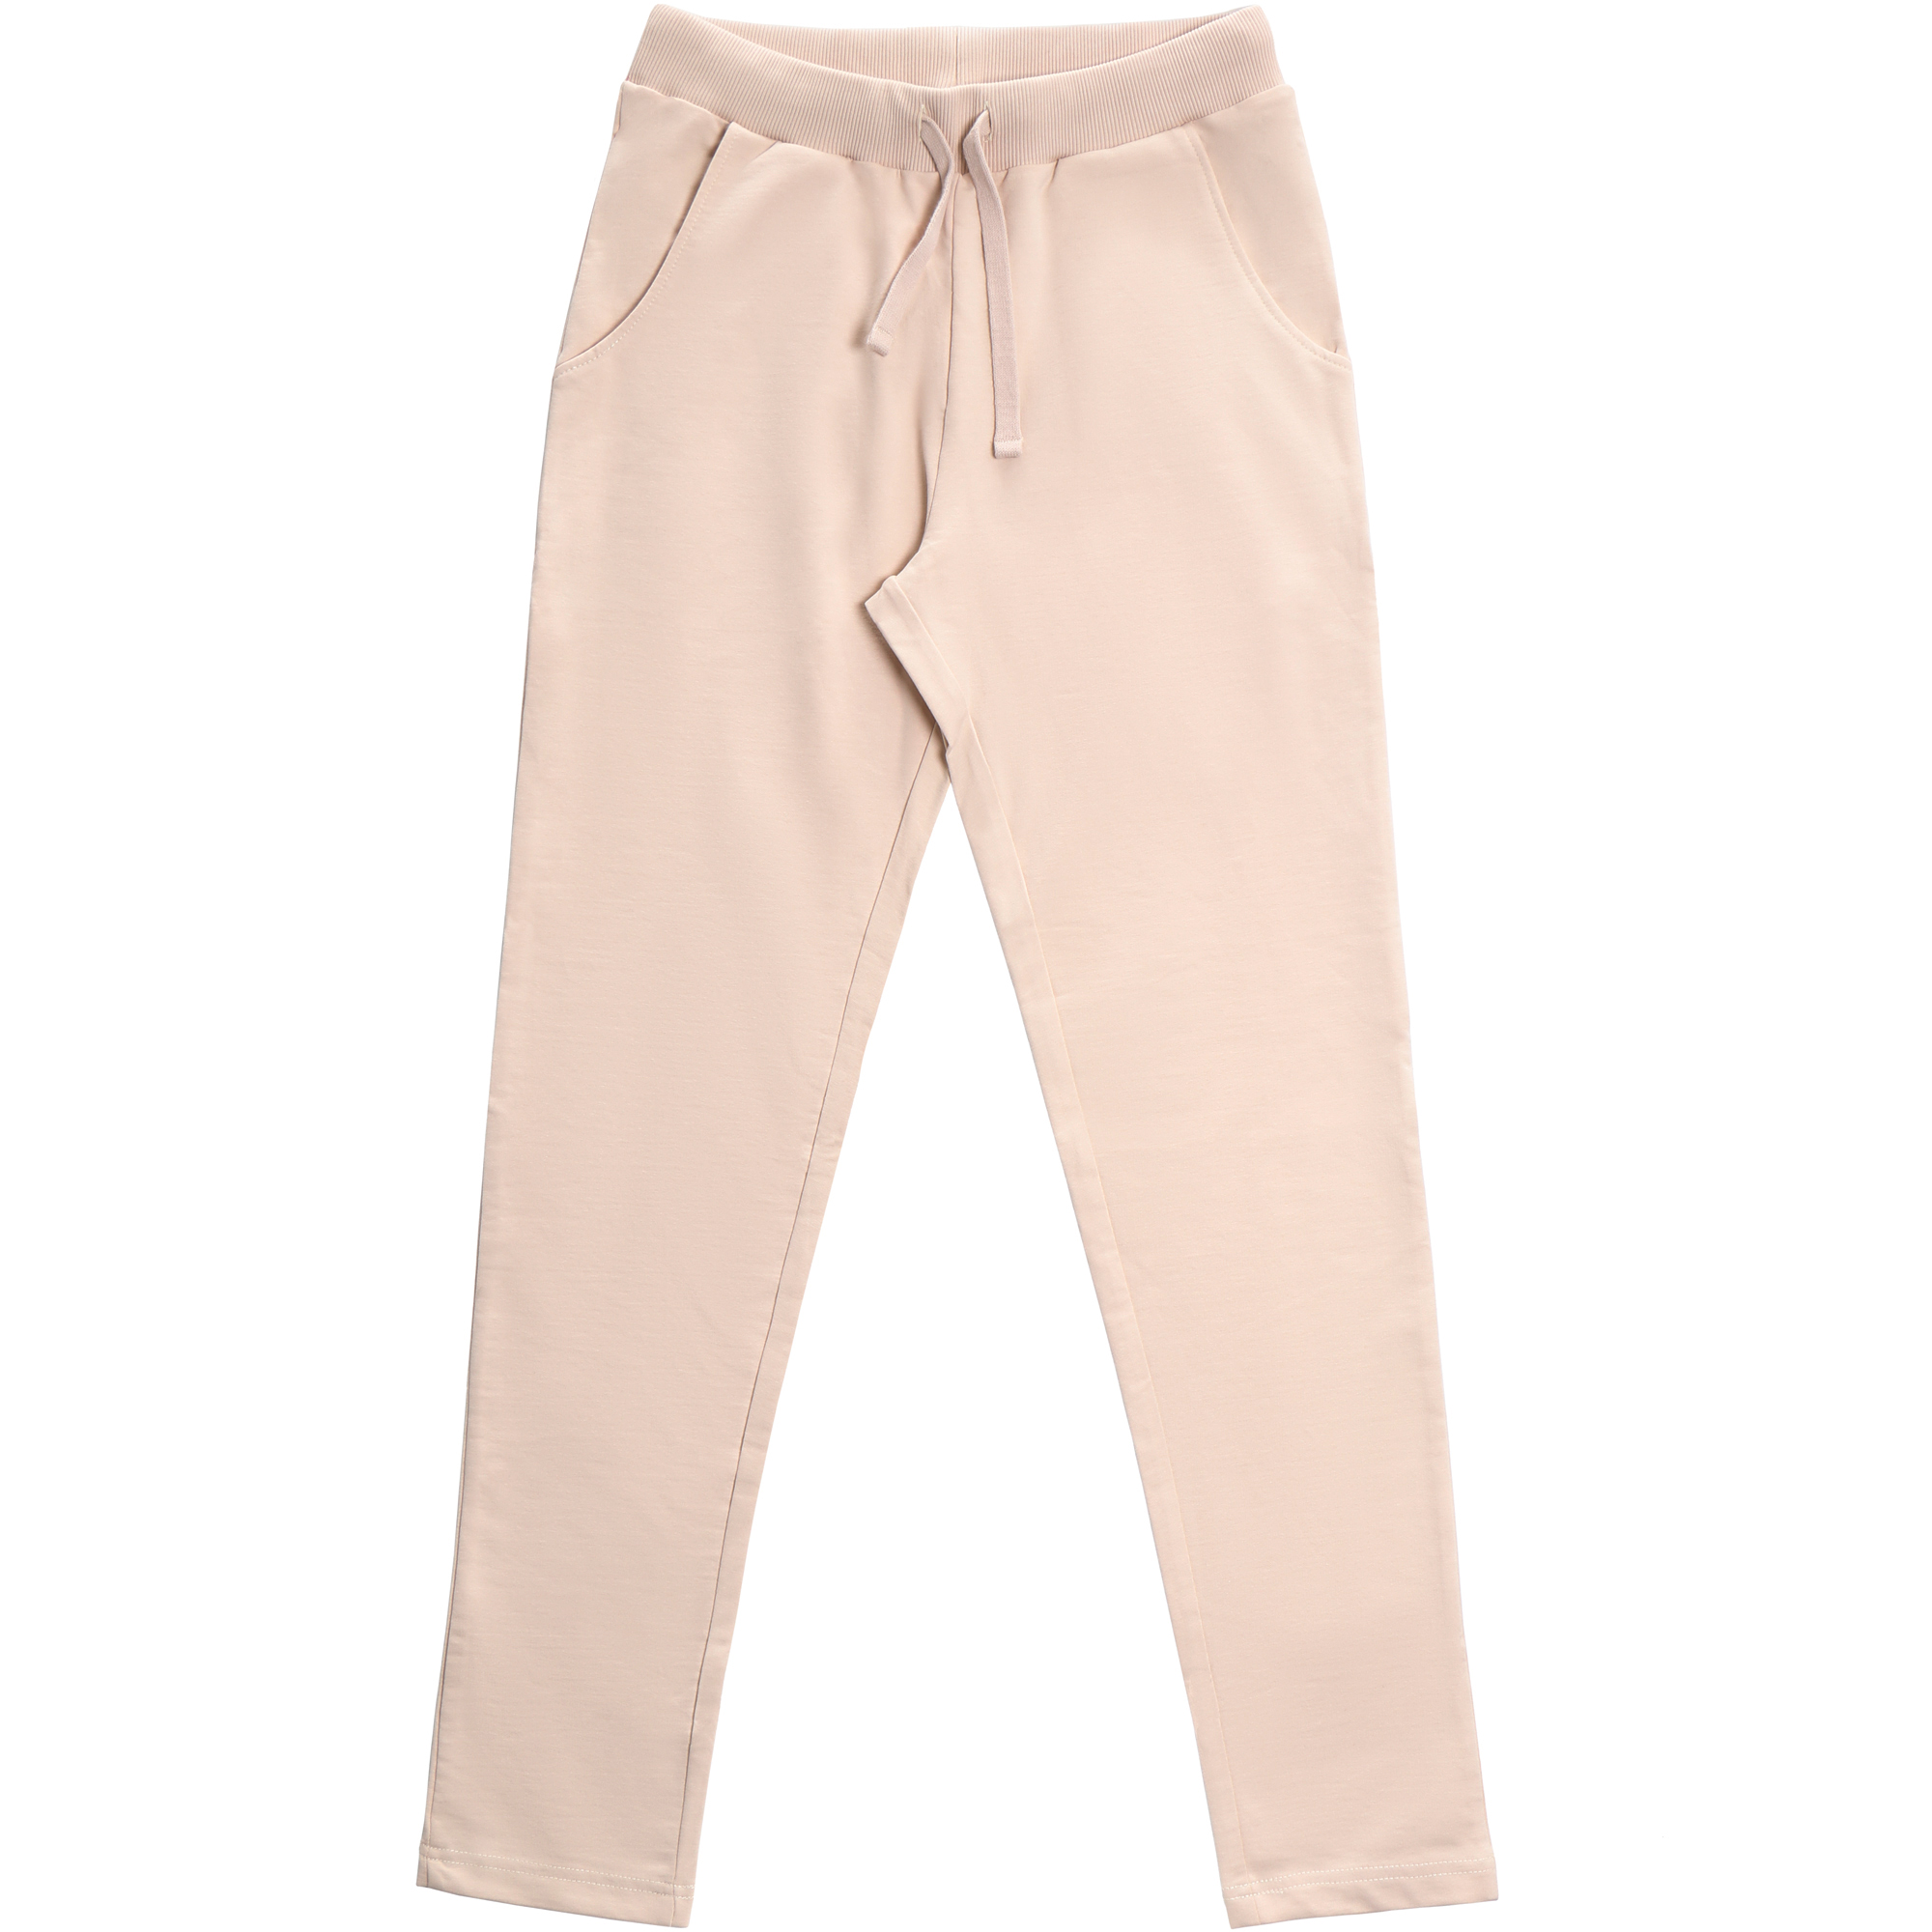 Женские брюки Birlik светло-бежевые, цвет светло-бежевый, размер XL - фото 1